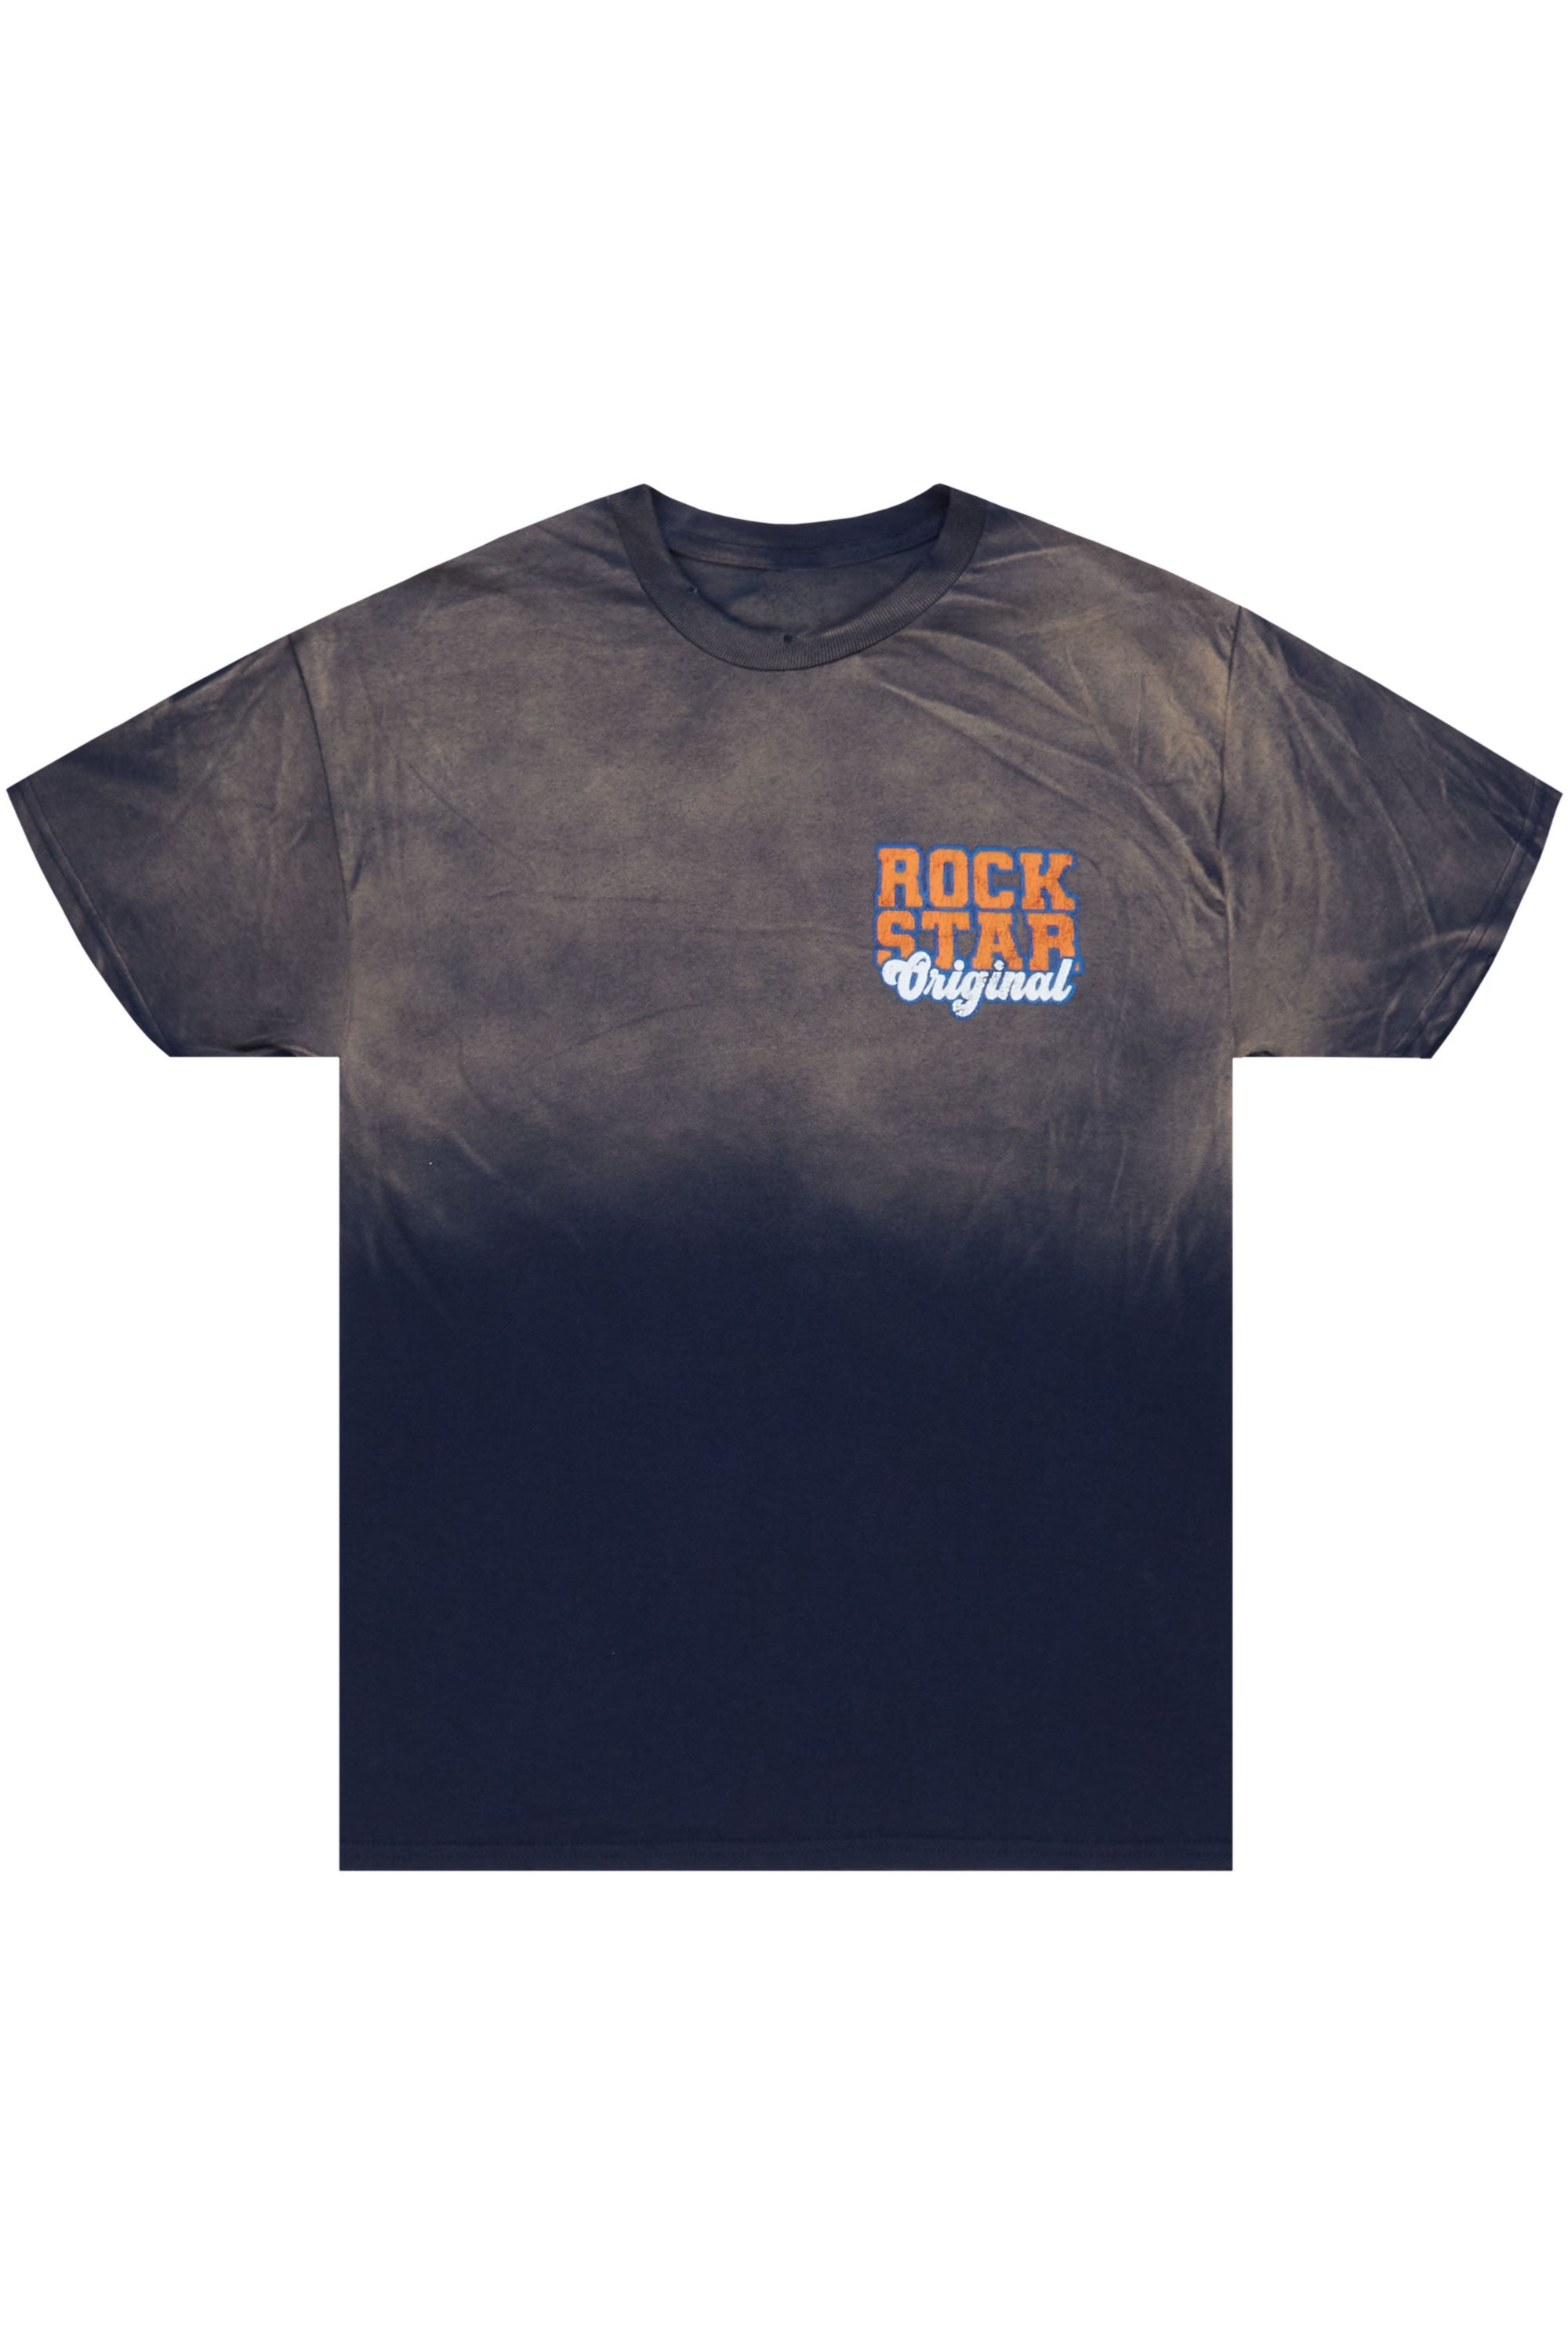 Pressiven Navy Graphic T-Shirt